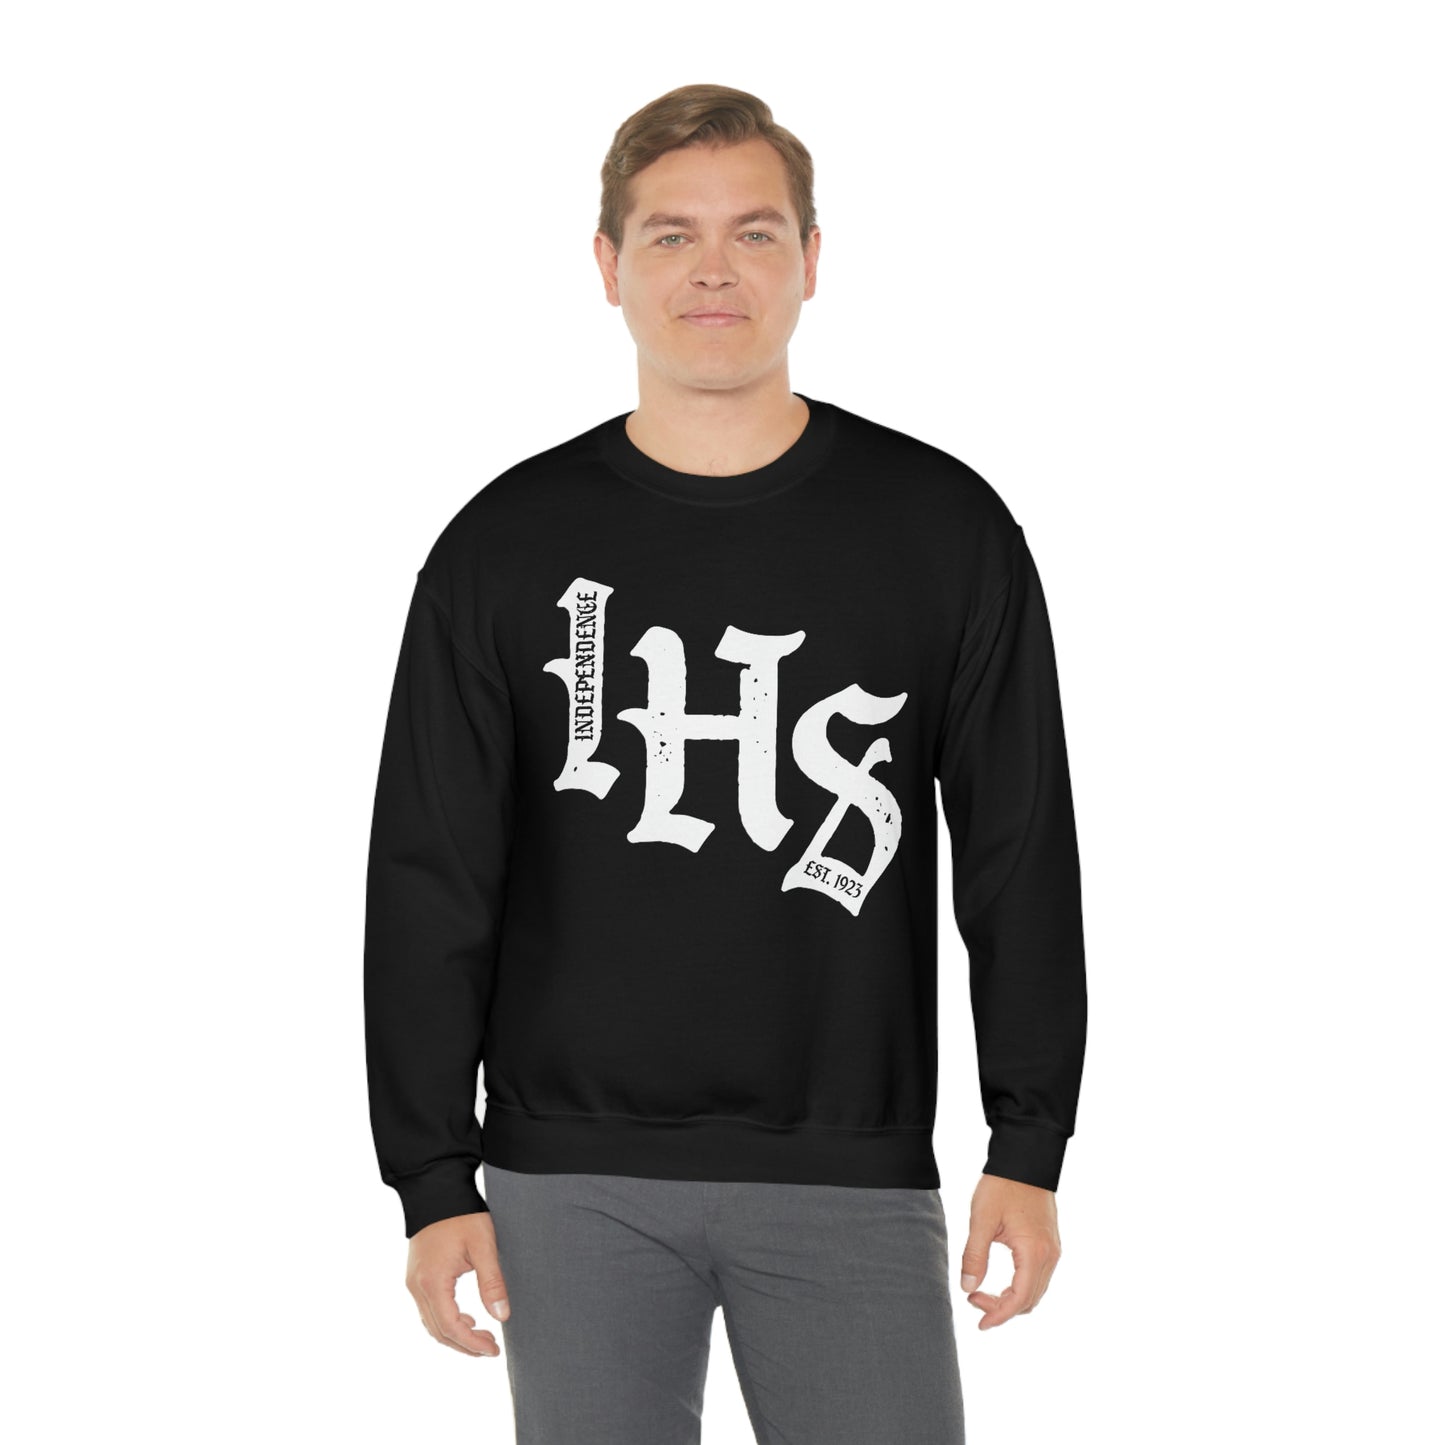 IHS - Crewneck Sweatshirt